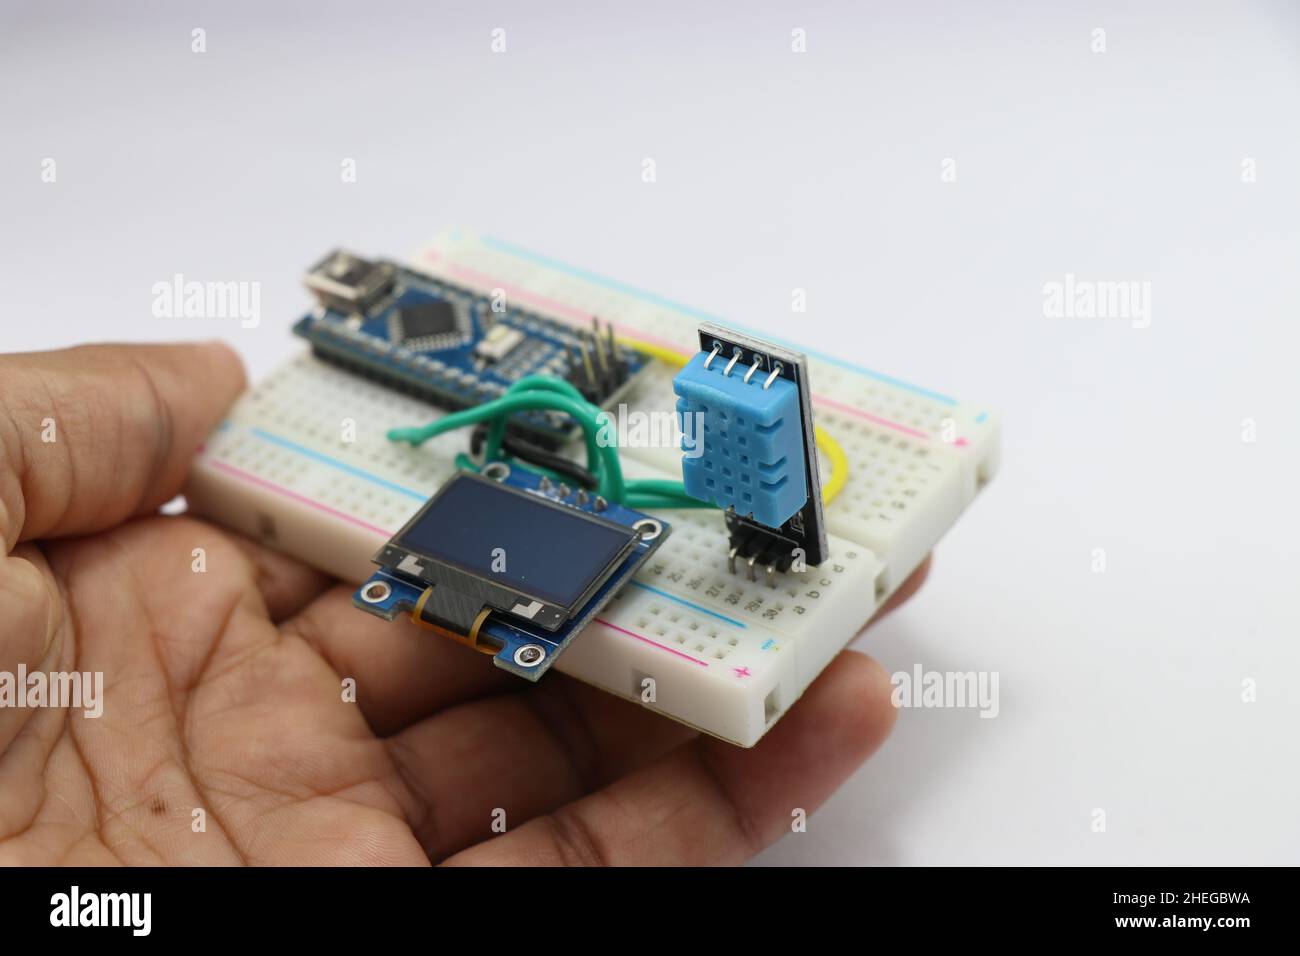 Feuchtigkeits- und Temperaturmessmodul für Arduino-Projekte mit OLED-Schaltung auf einem in der Hand gehaltenen Breadboard, das das Konzept der kreativen Idee zeigt Stockfoto